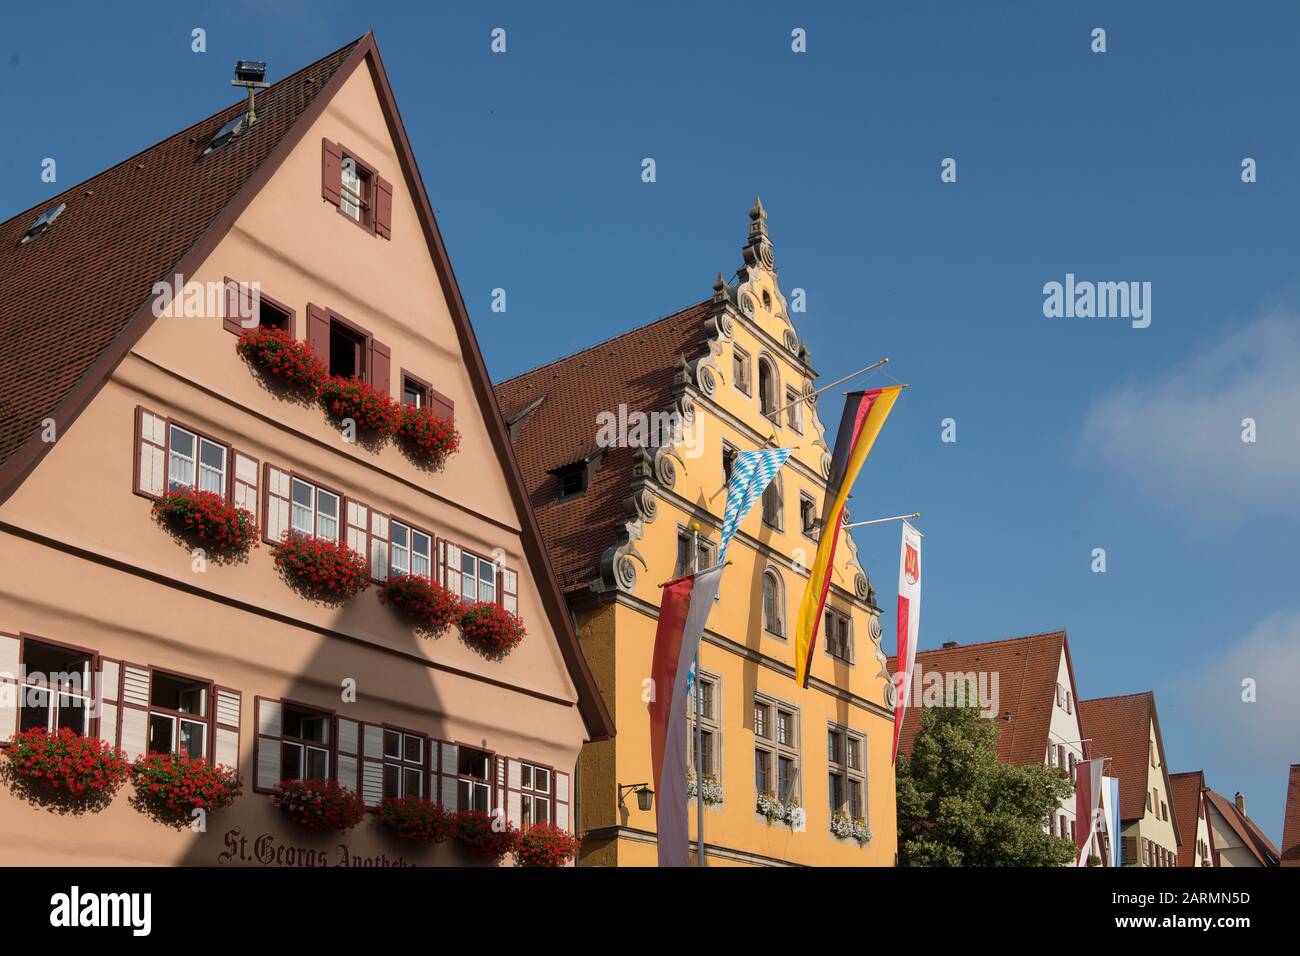 Dinkelsbühl, Allemagne - 16 juillet 2019; maisons colorées À Colombages avec drapeaux sur le marché central à Dinkelsbühl un lieu touristique et historique à Banque D'Images